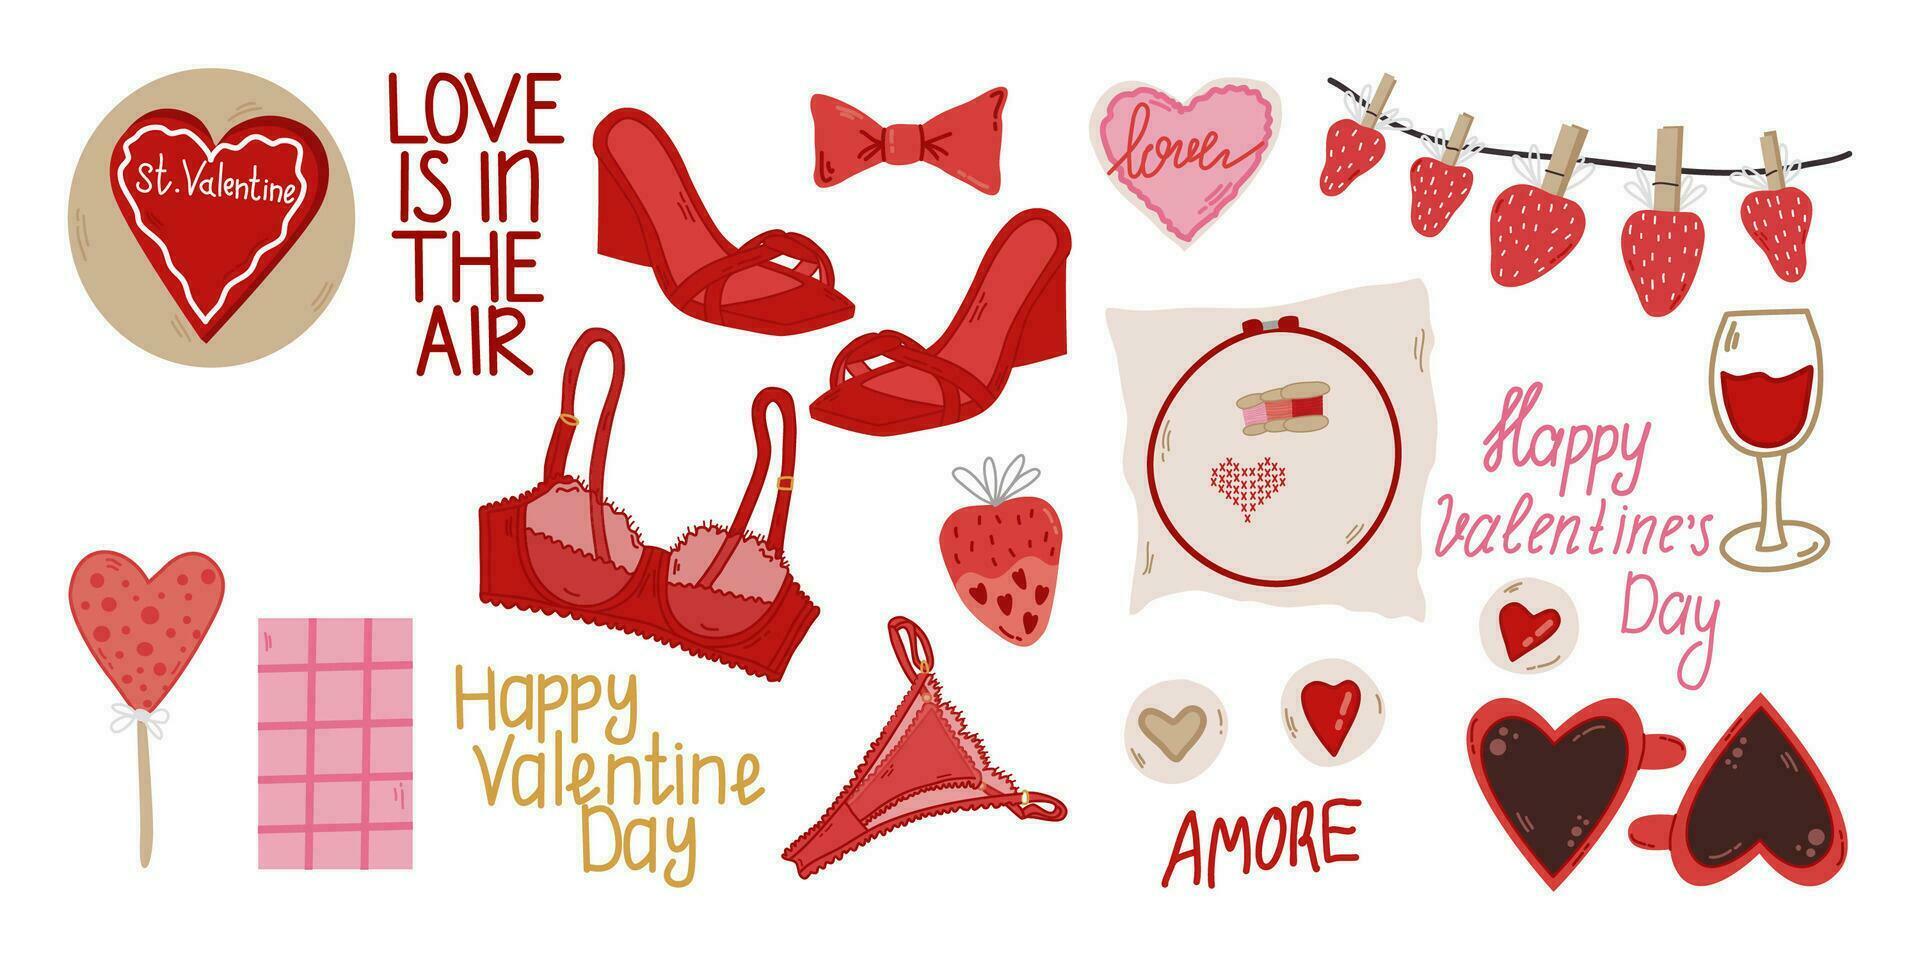 valentines dag söt element uppsättning. hjärta, underkläder, behå, trosor, skor, choklad, klubba, jordgubb, choklad, hjärta broderi, kors stygn, koppar hjärta, småkakor. vektor